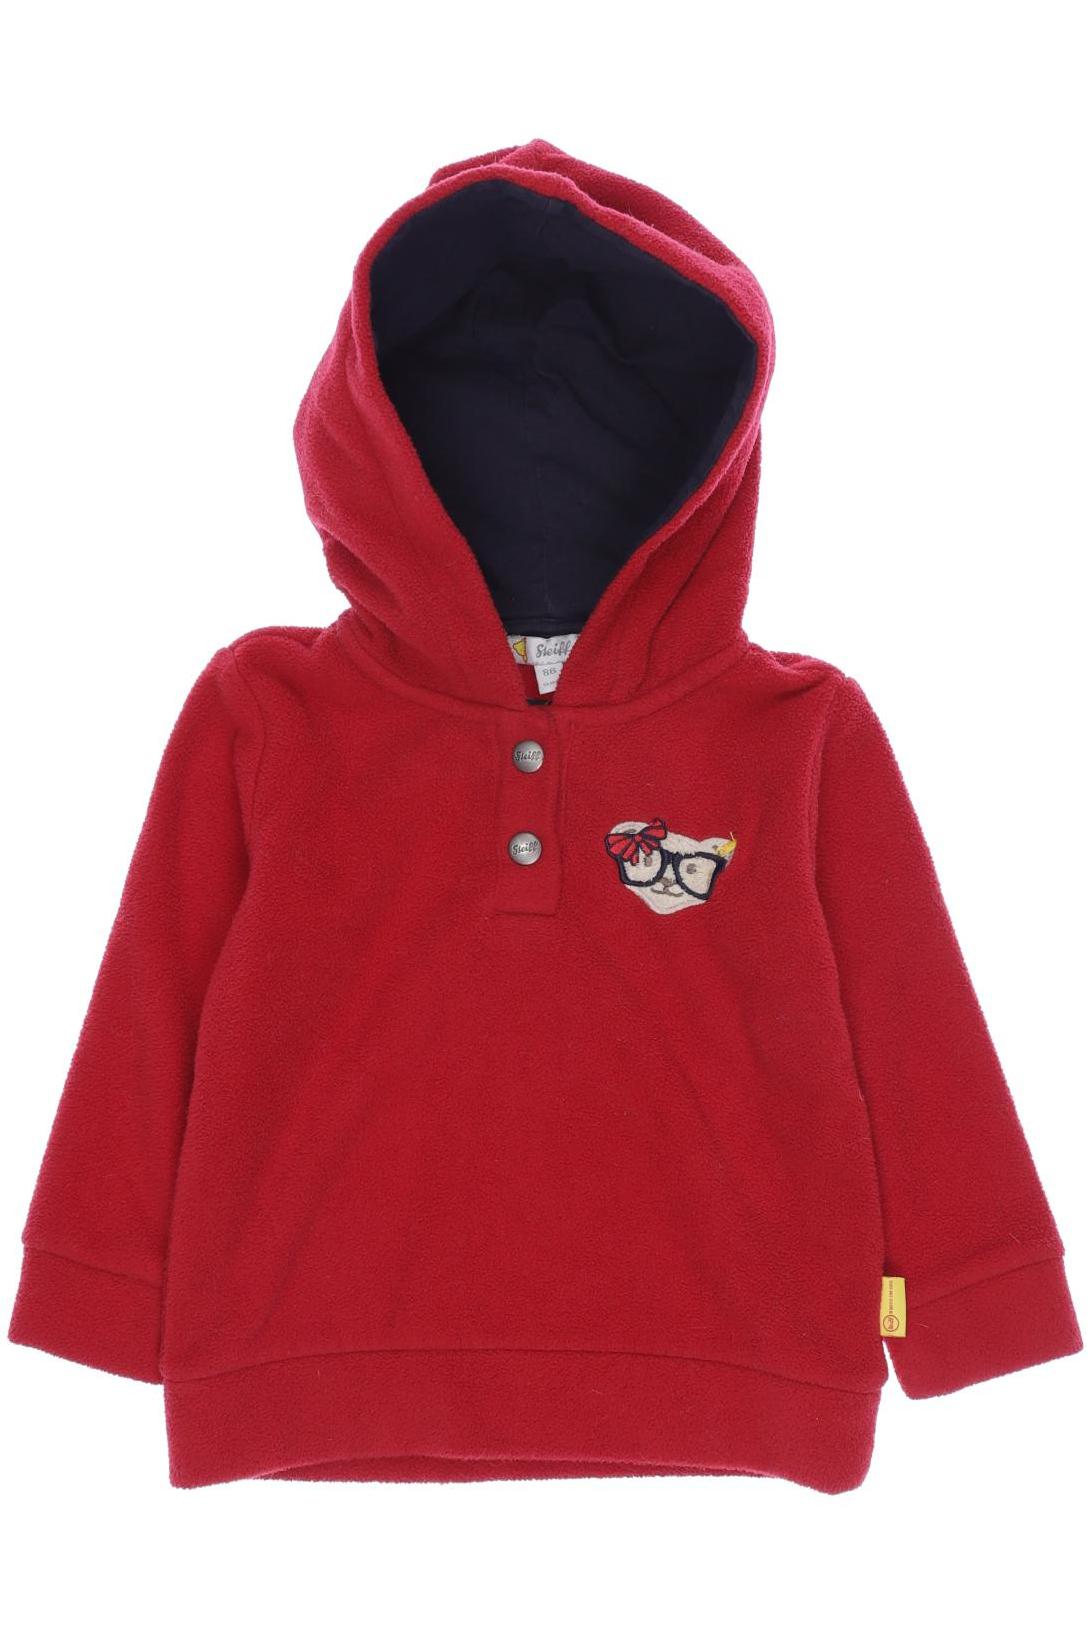 Steiff Mädchen Hoodies & Sweater, rot von Steiff